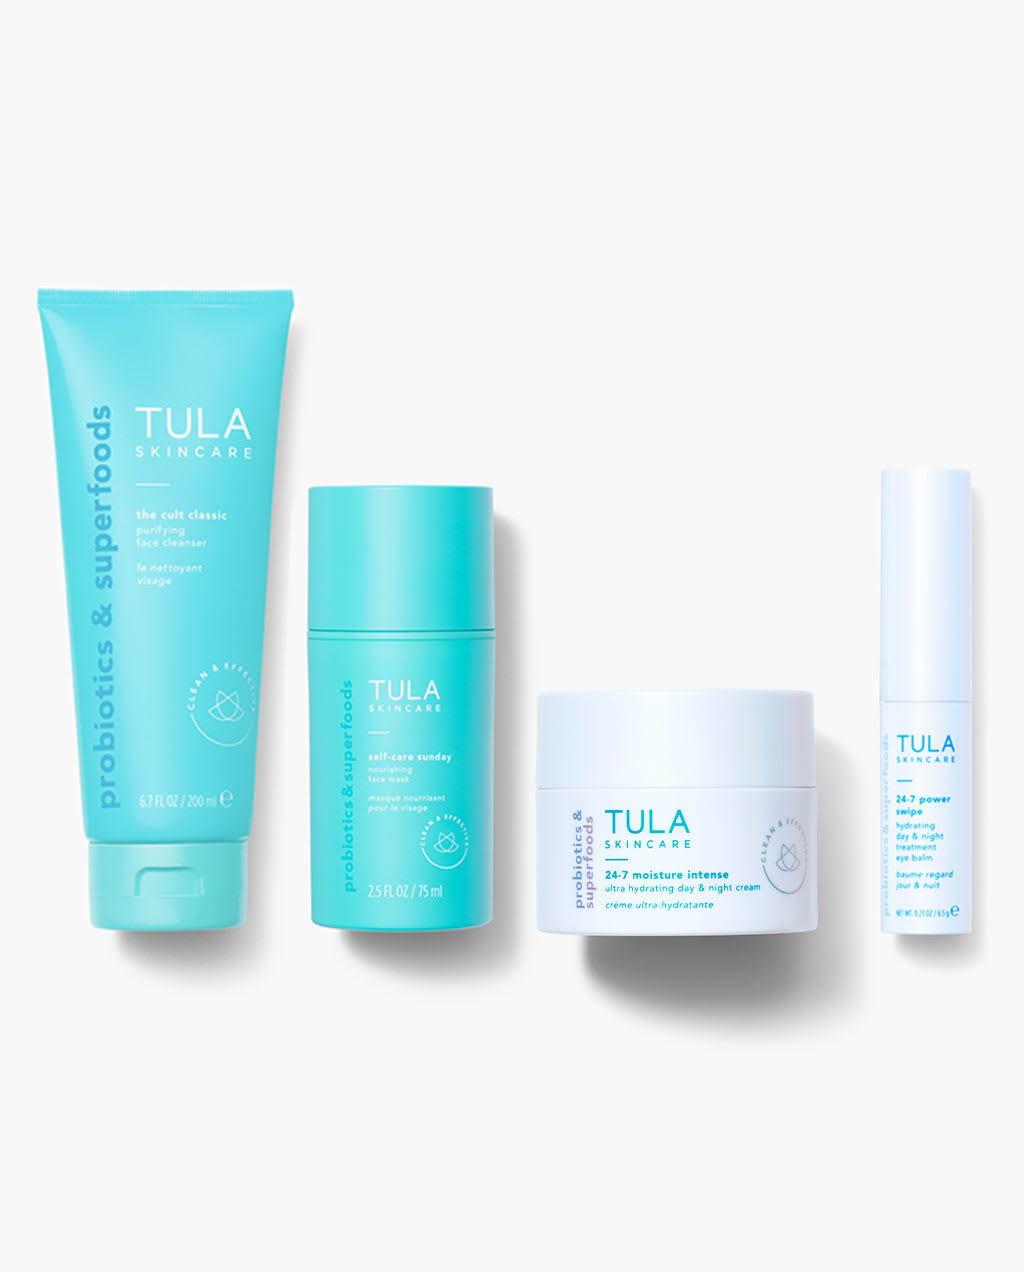 Skincare Kits - Value Sets and Gifts | TULA Skincare